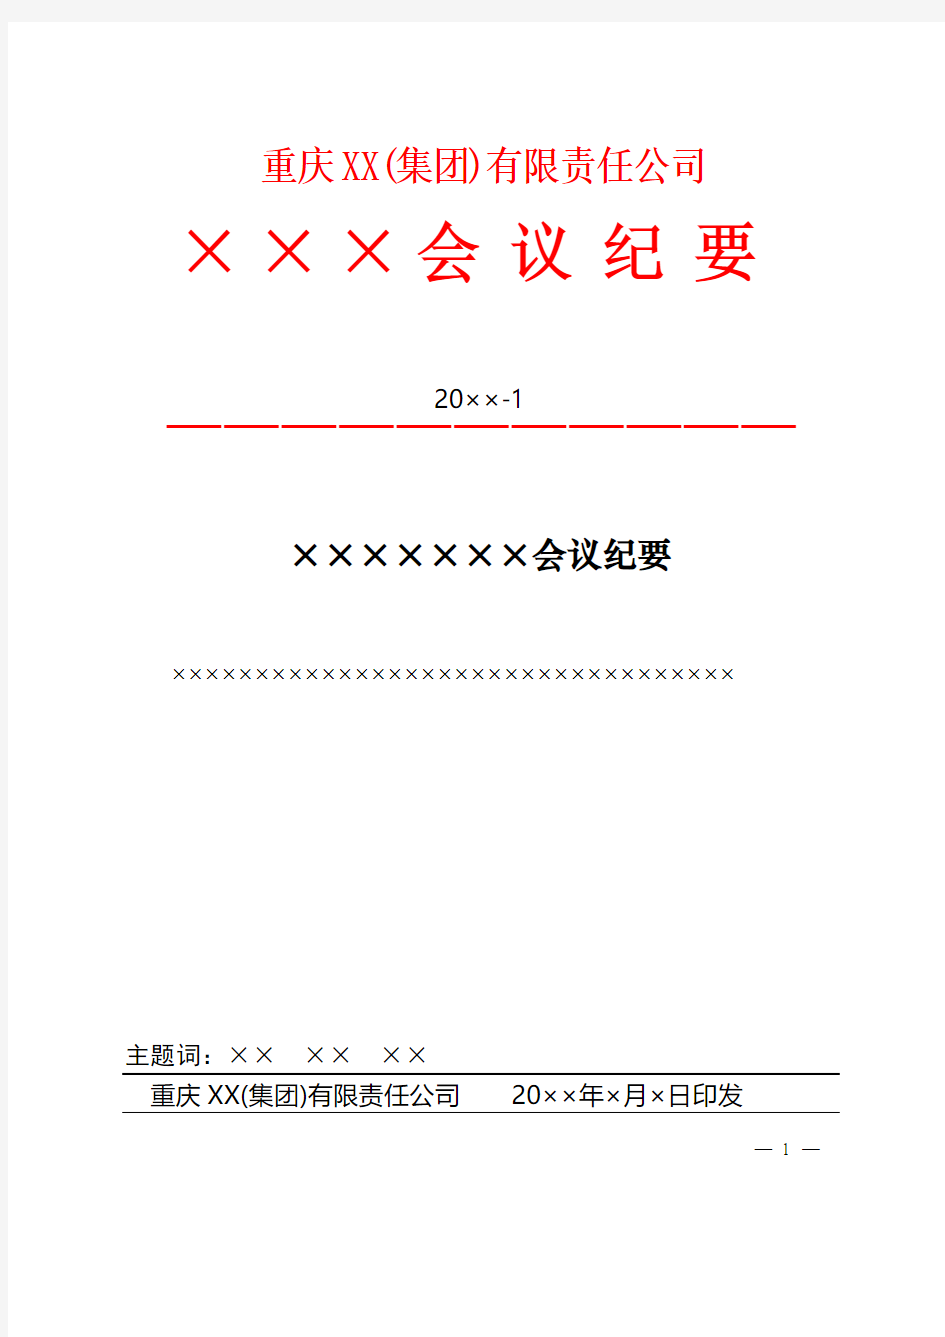 重庆集团红头文件会议纪要模板范例